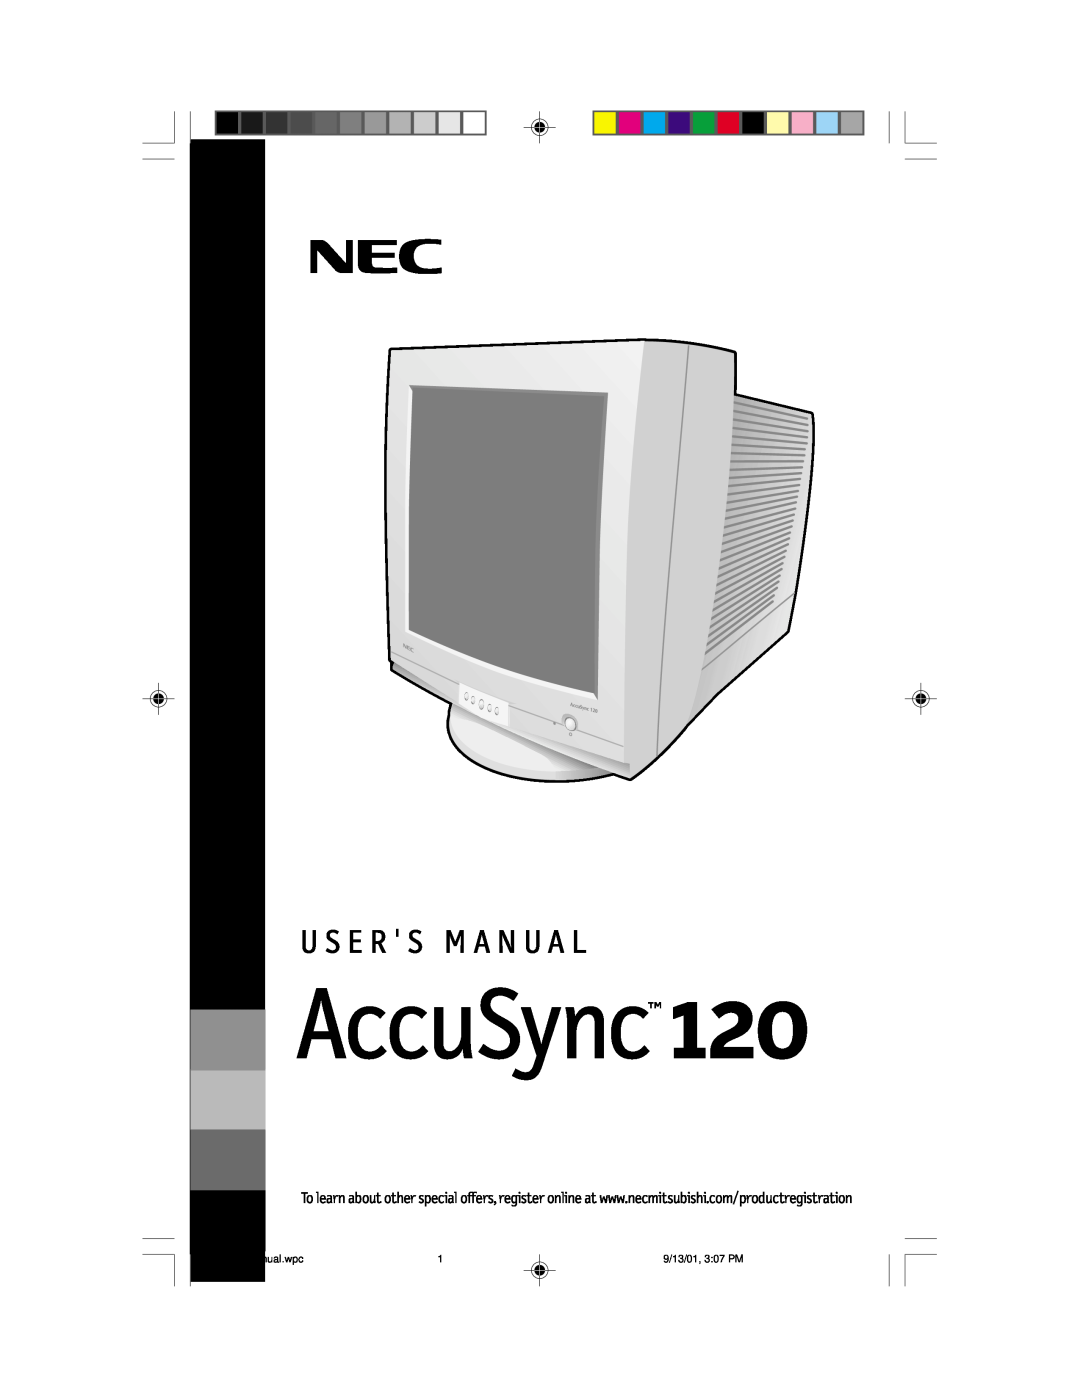 NEC AccuSync 120 user manual U S E R S M A N U A L, AS120Manual.wpc, 9/13/01, 307 PM 